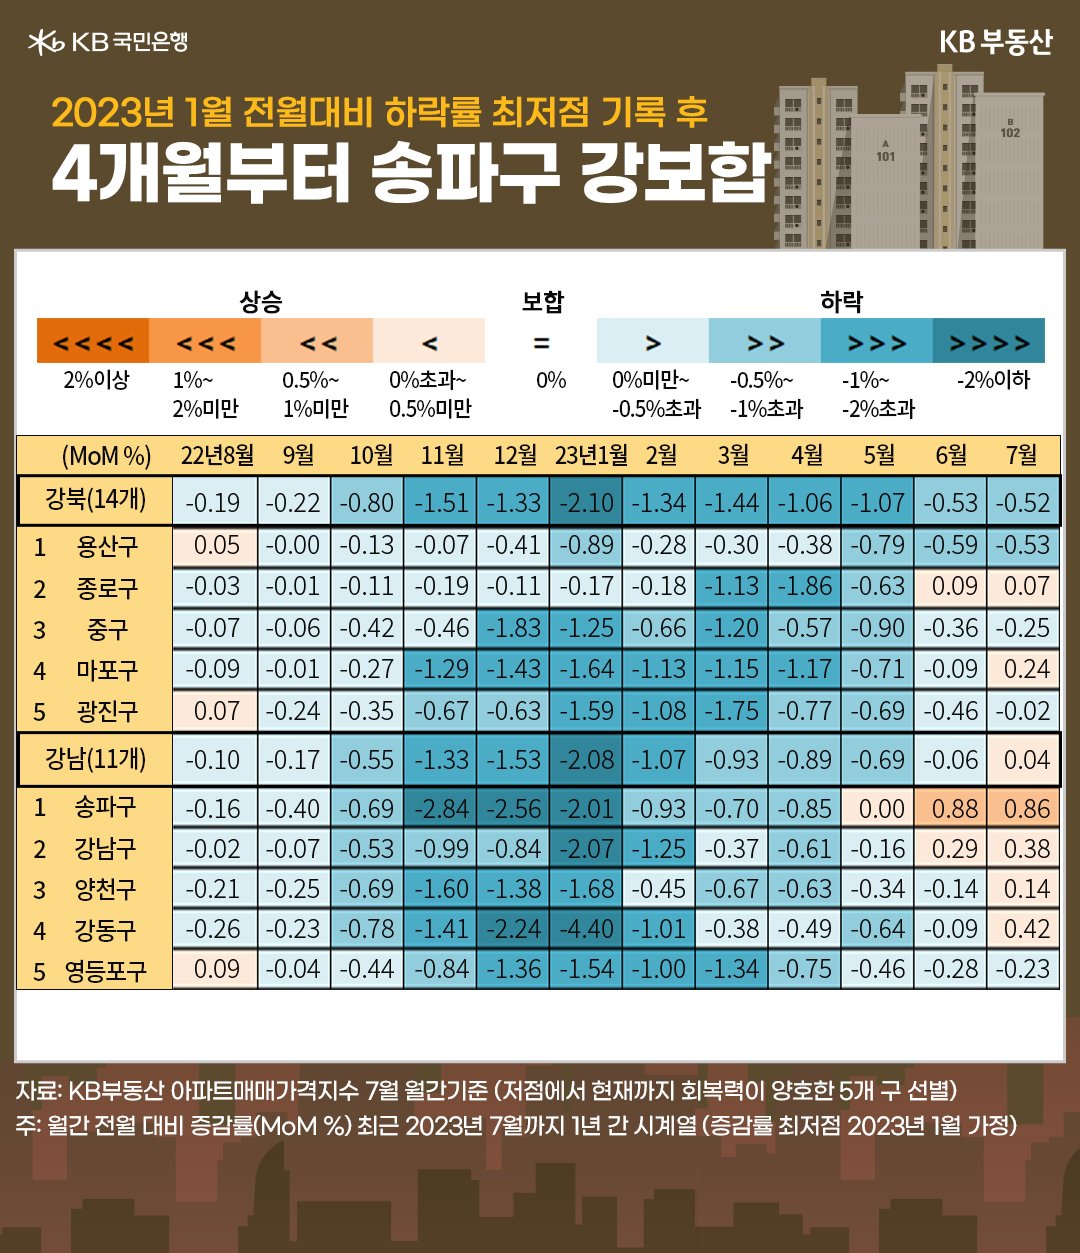 2023년 1월 전월대비 하락률 최저점 기록 후 4개월부터 송파구 강보합